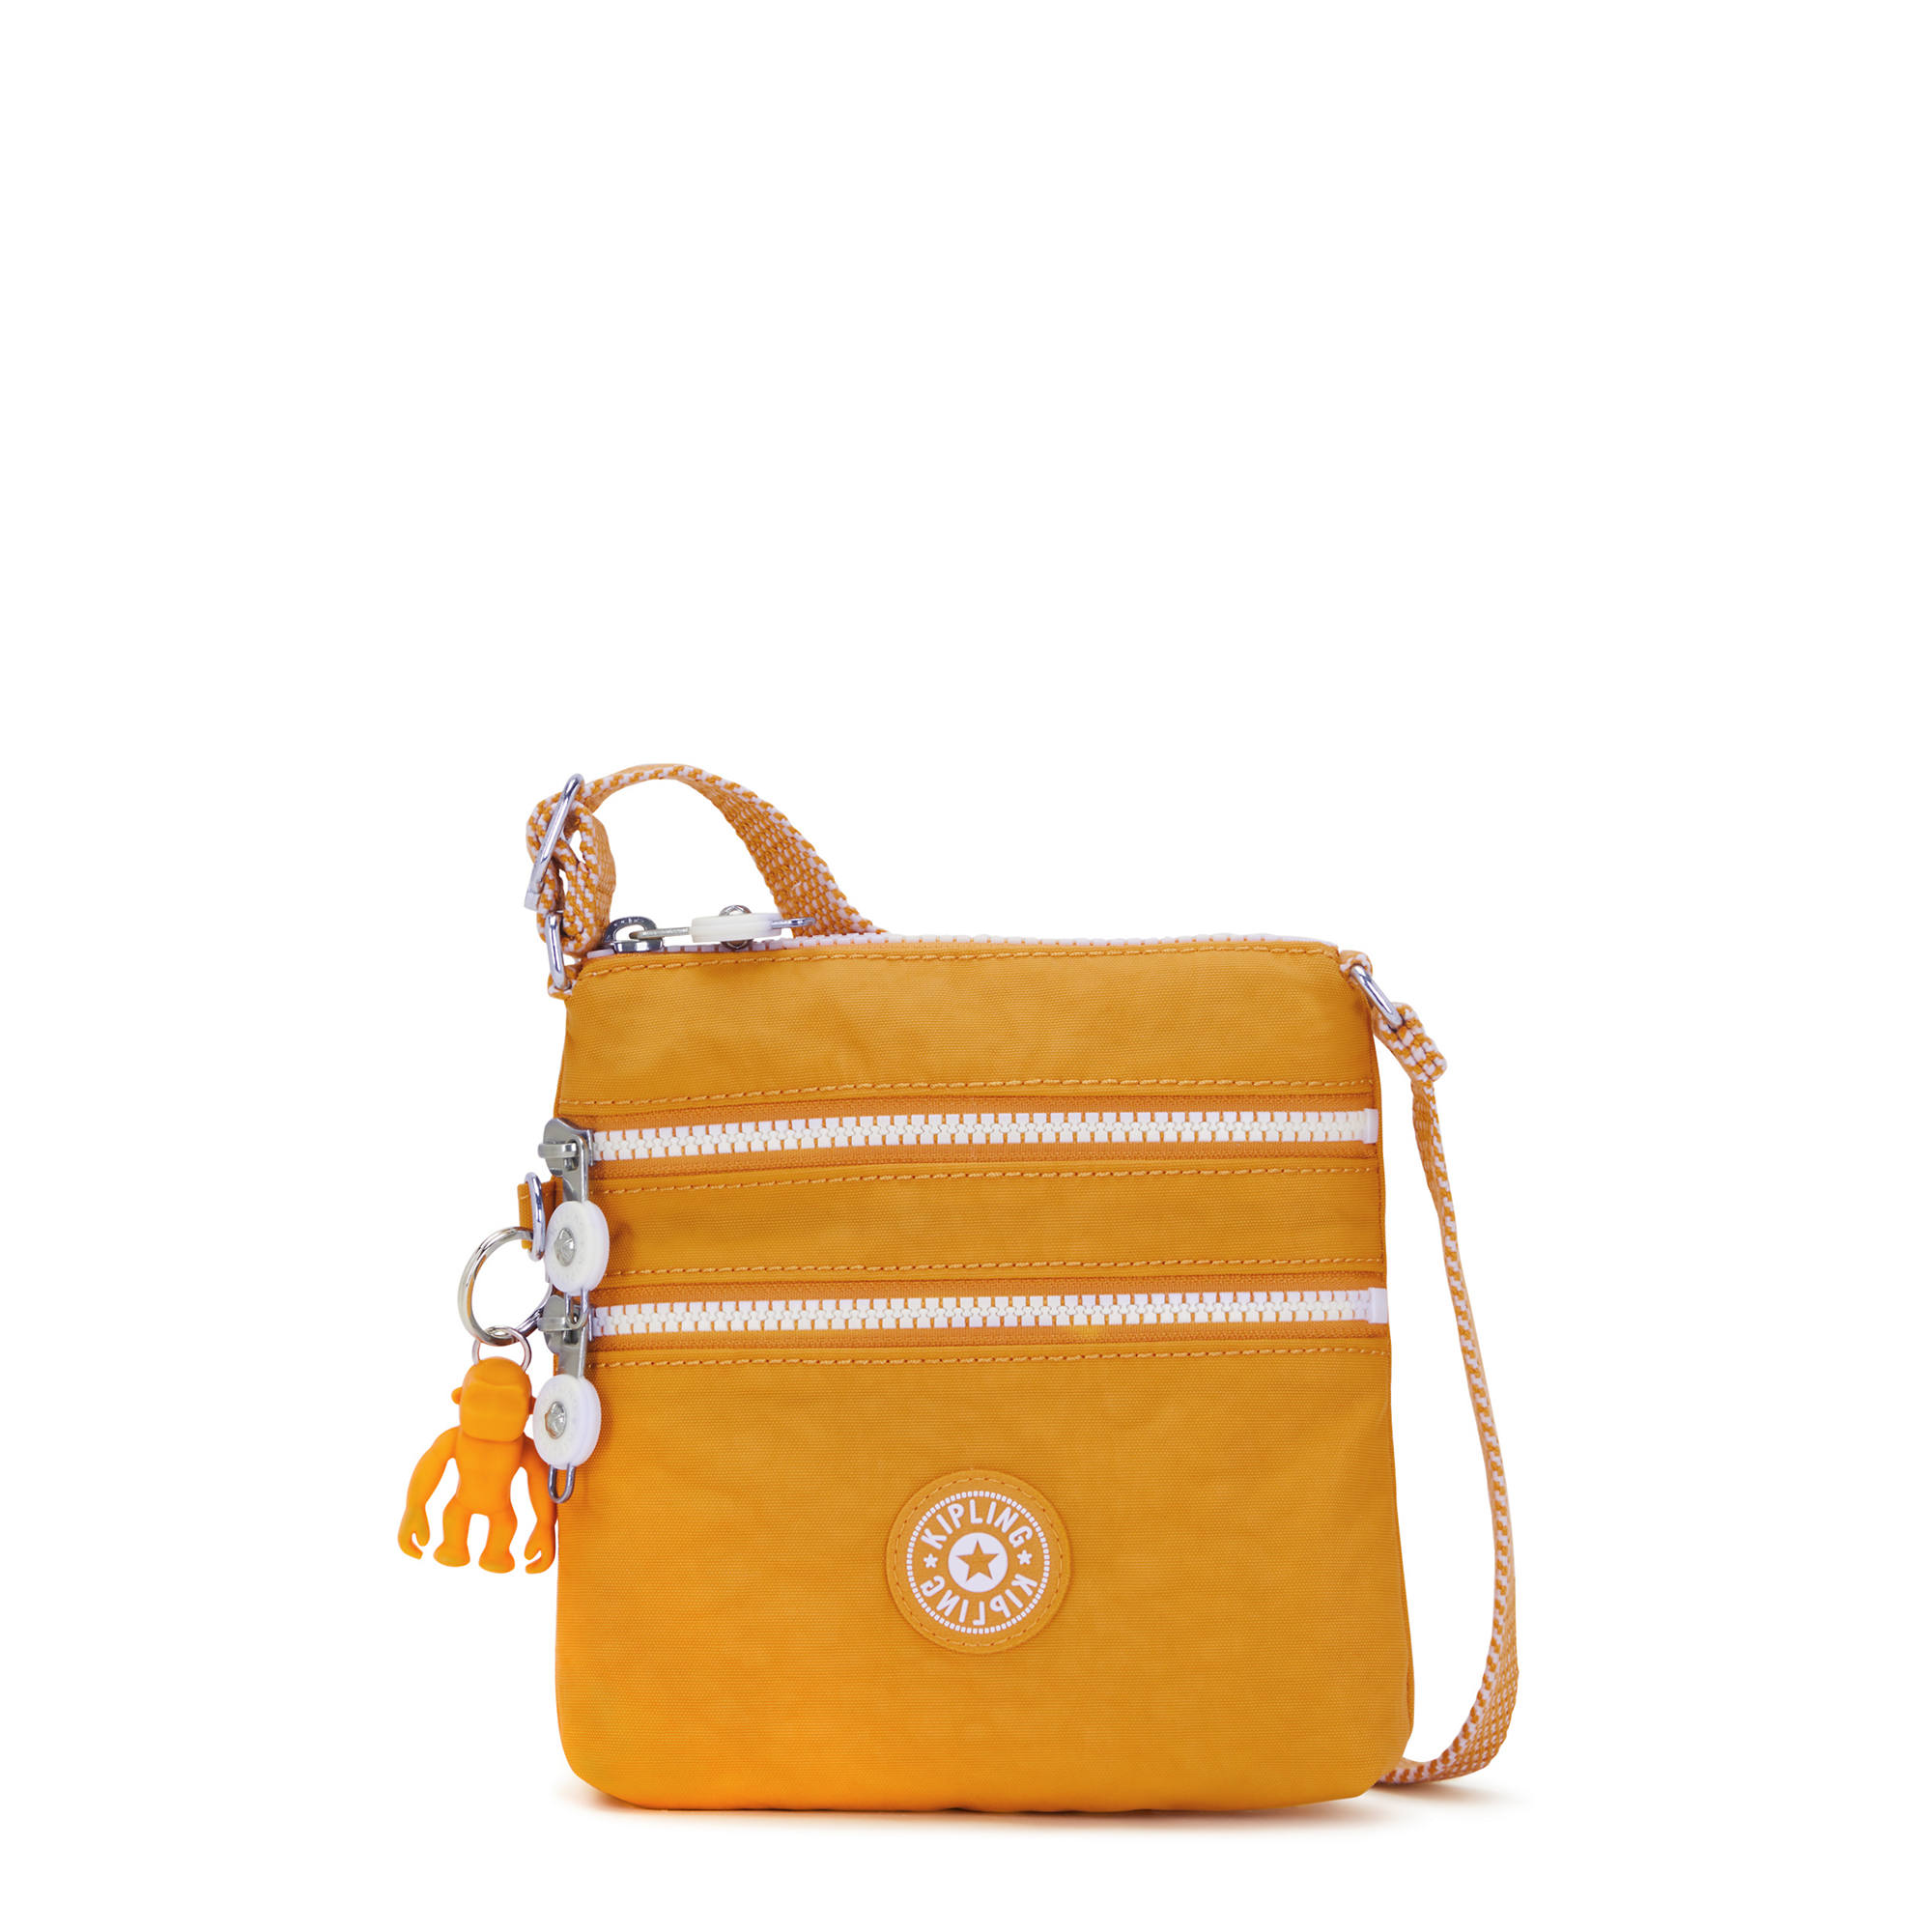 Kipling Women's Alvar Extra Small Crossbody Handbag with Adjustable ...